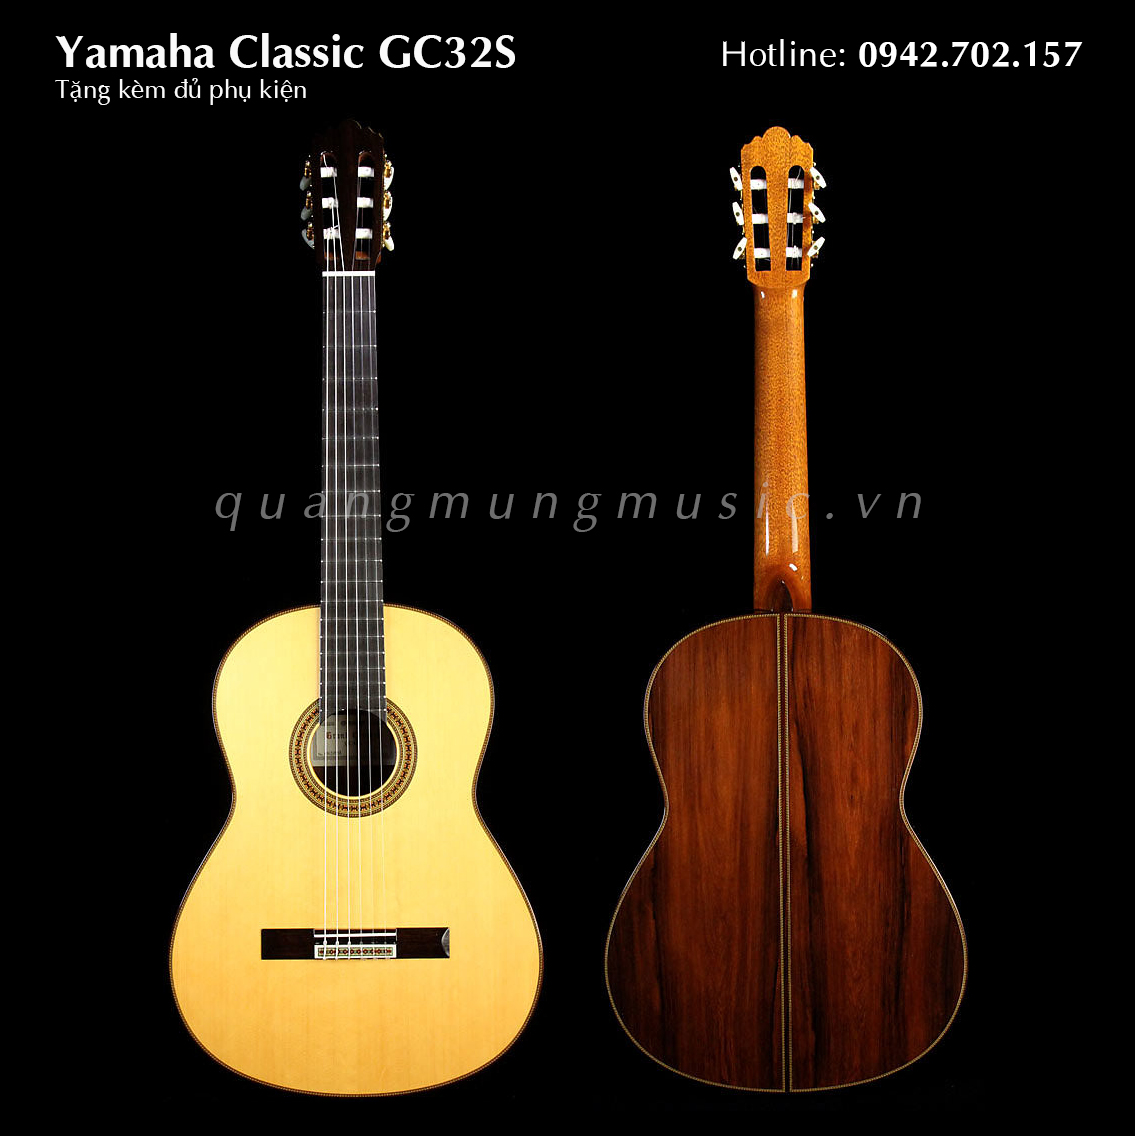 classic-GC32S-guitar